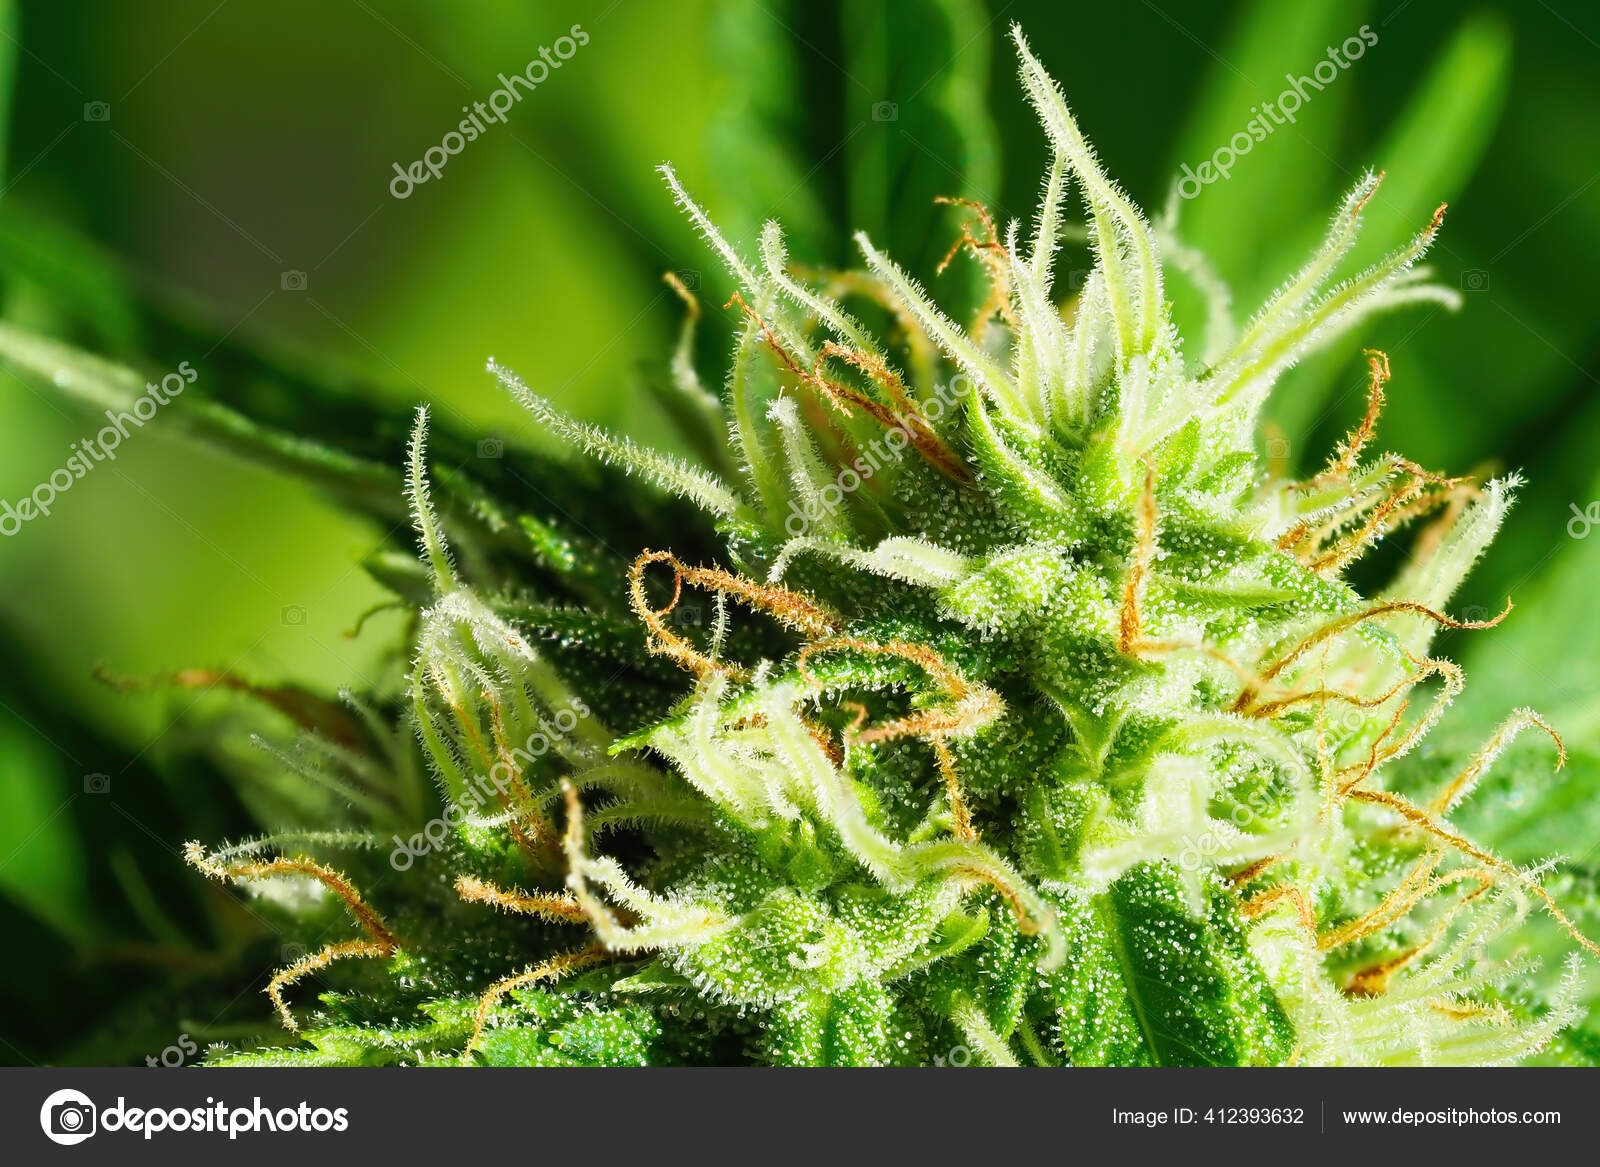 成熟的大麻植物宏观北极光开花的女性大麻花蕾大的科拉花有明显的白色雌蕊毛和琥珀色三叶草被阳光照得发亮的大麻四后续行动